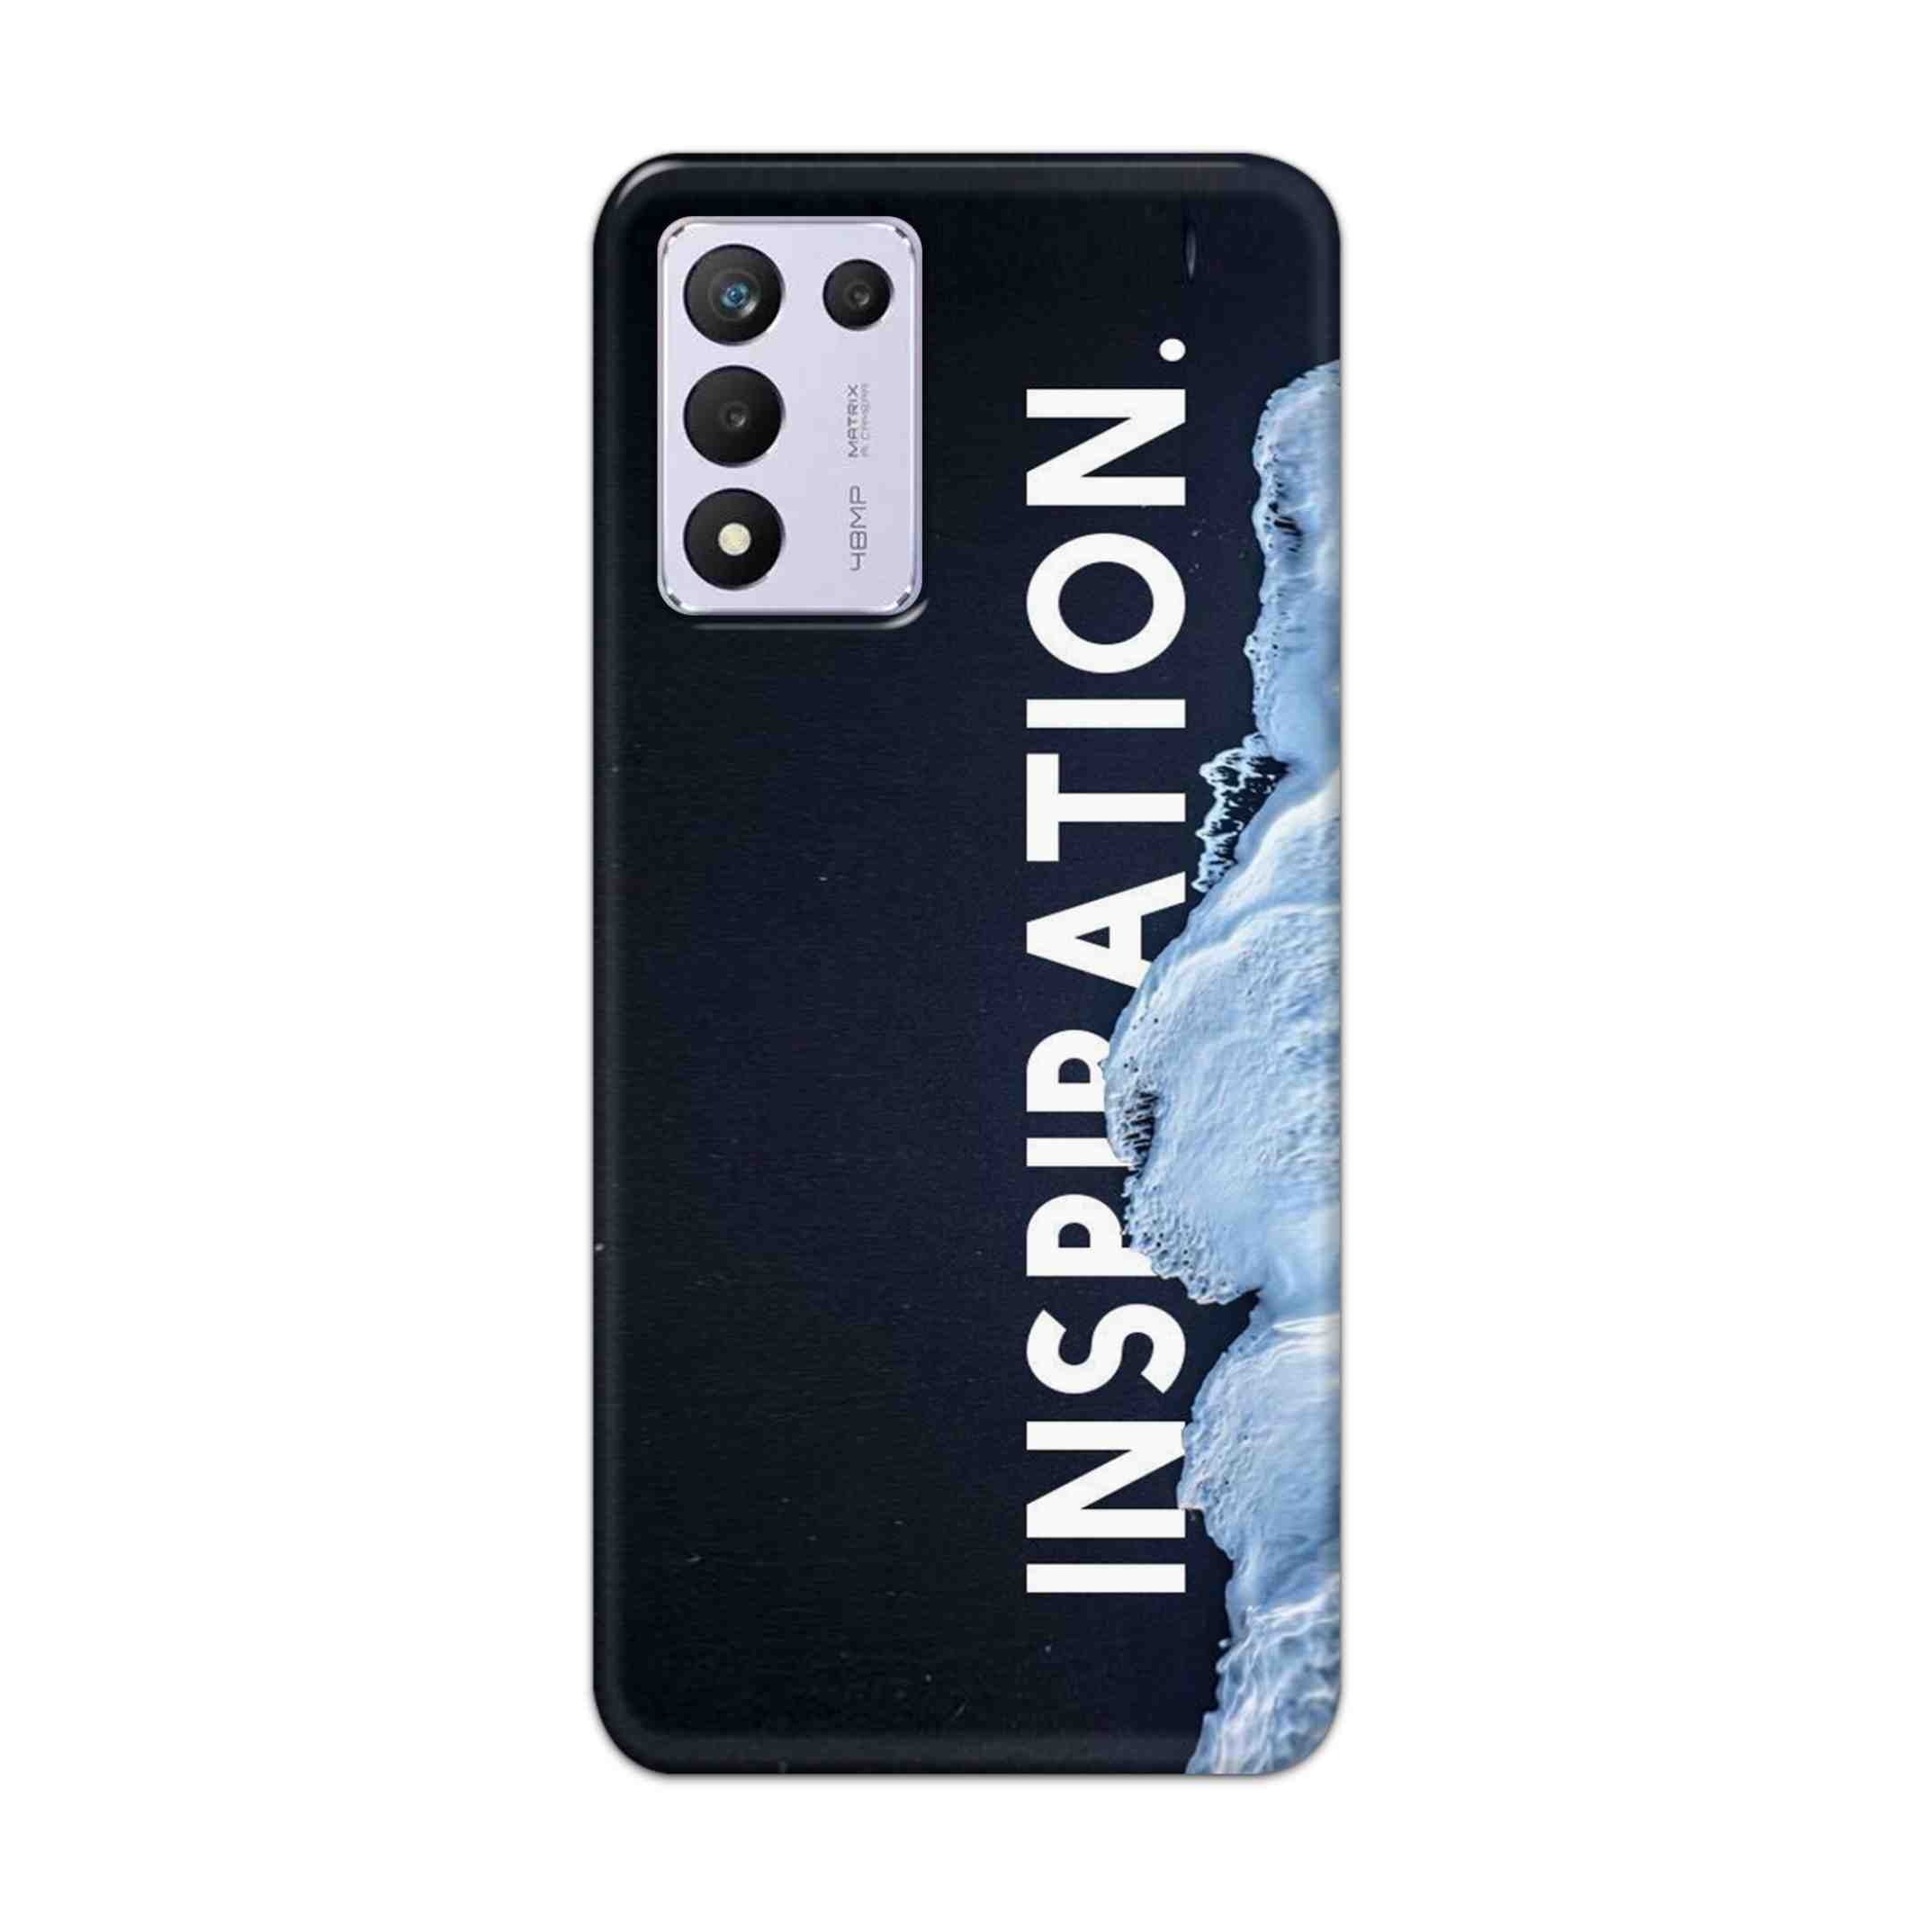 Buy Inspiration Hard Back Mobile Phone Case/Cover For Realme 9 5G SE Online